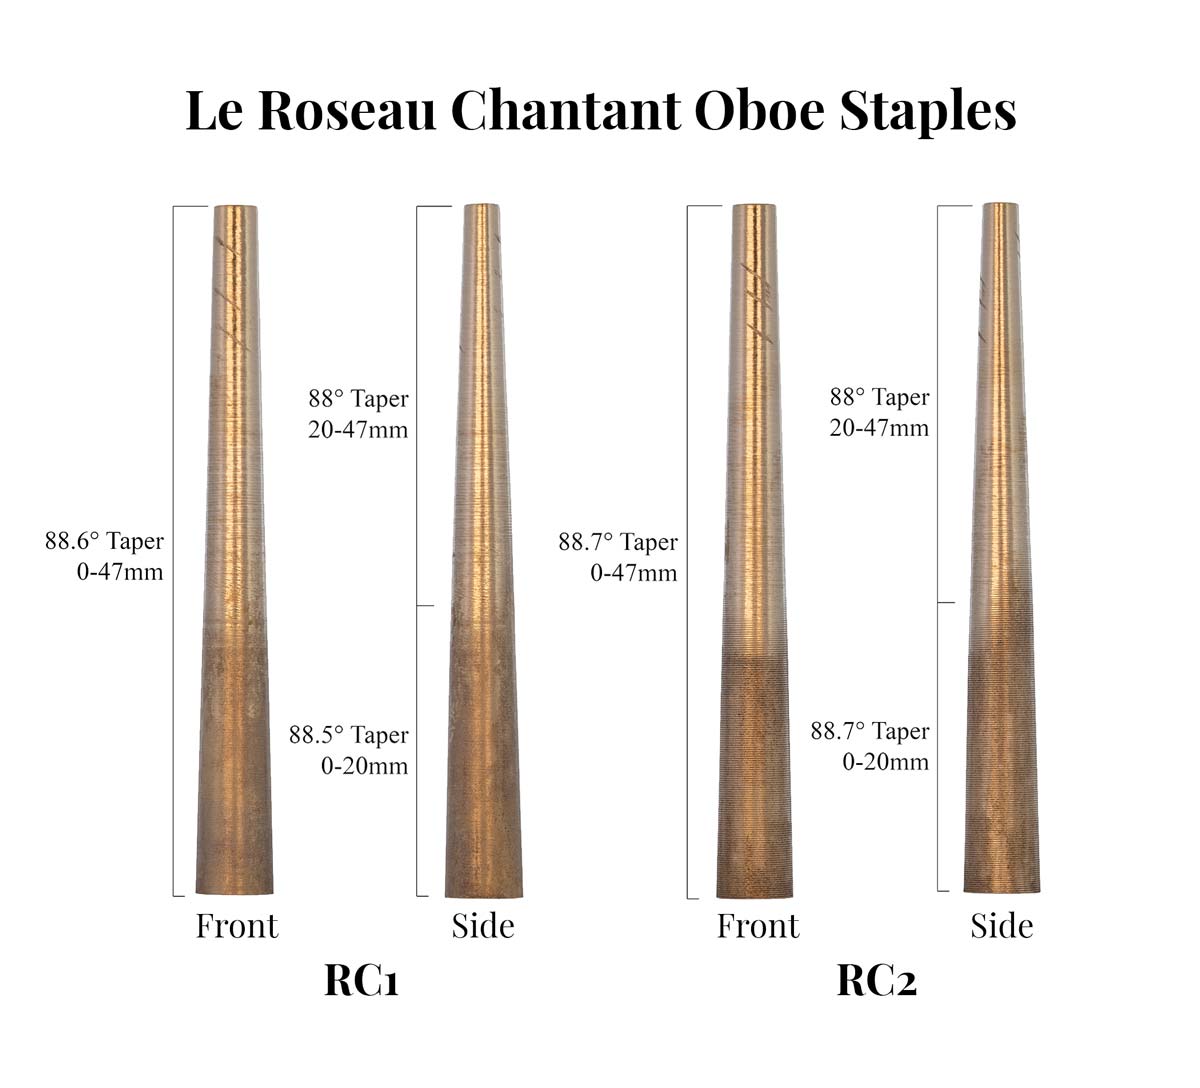 Le Roseau Chantant Oboe Staples Taper Comparison